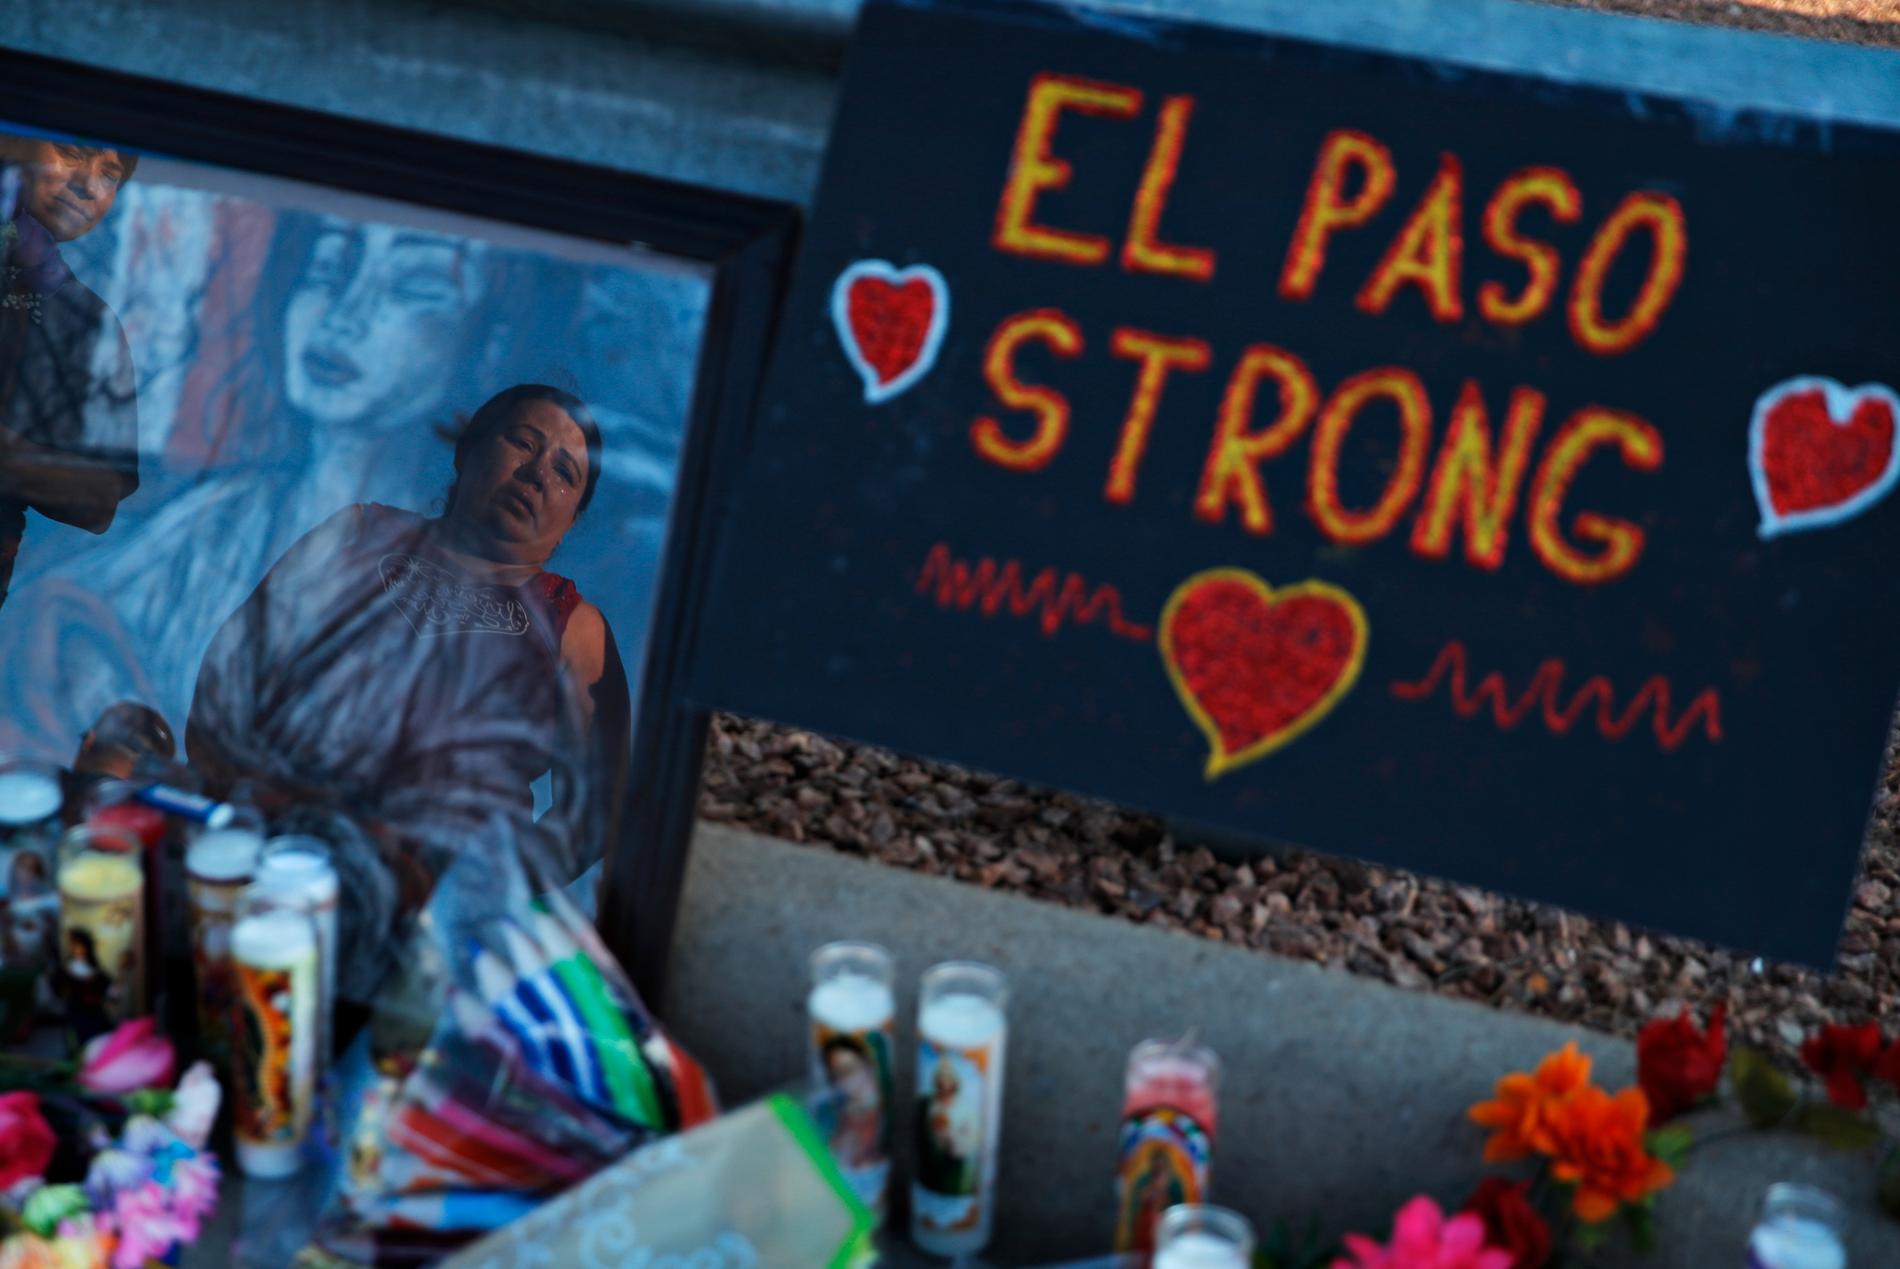 En minnesplats för de 22 som dog i helgens masskjutning i El Paso i Texas.